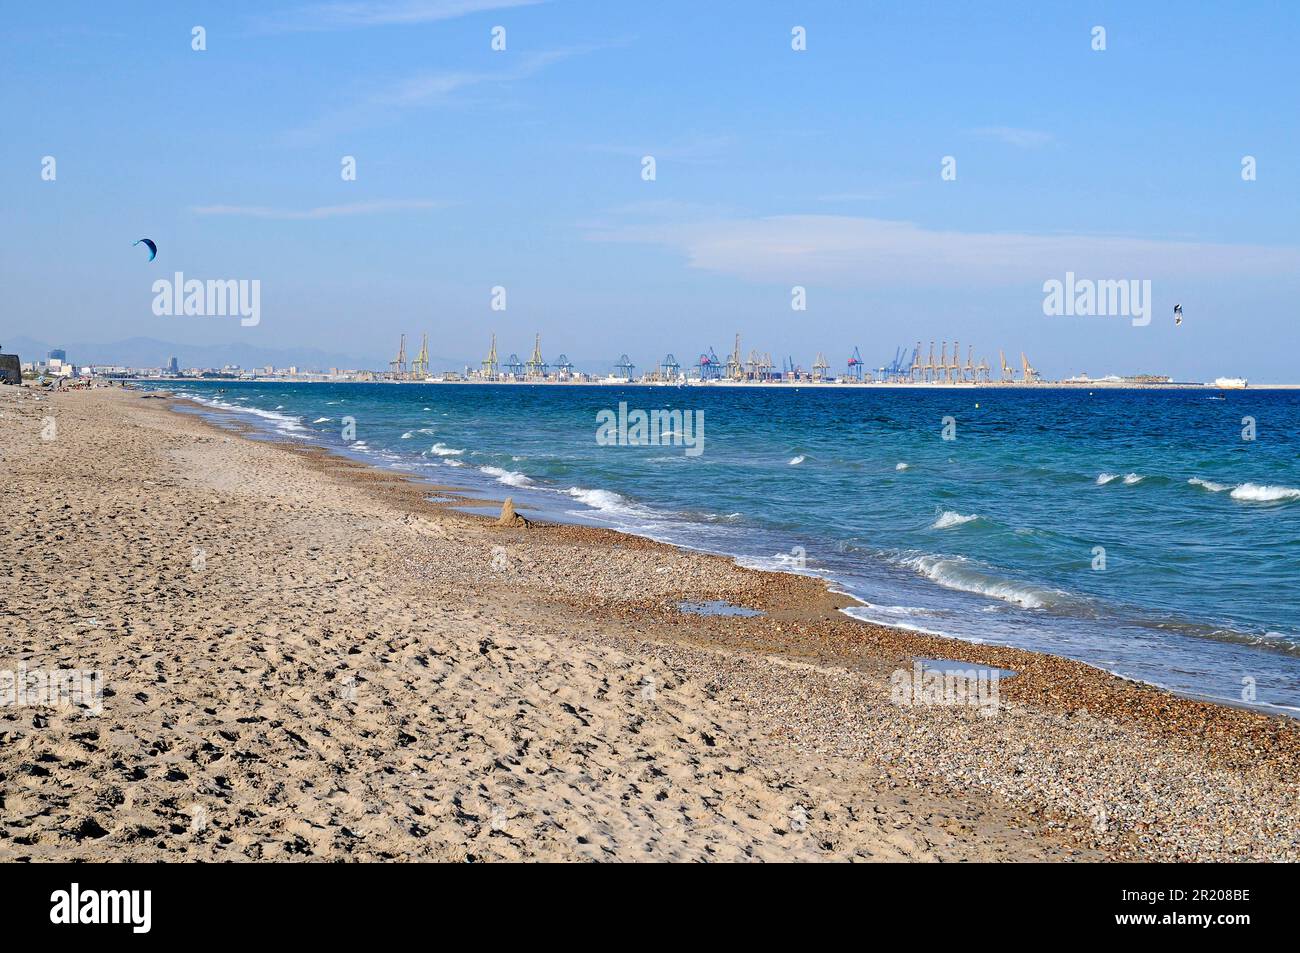 Playa de El Saler, beach, industrial port, harbour, Valencia, Valencian Community, Spain Stock Photo